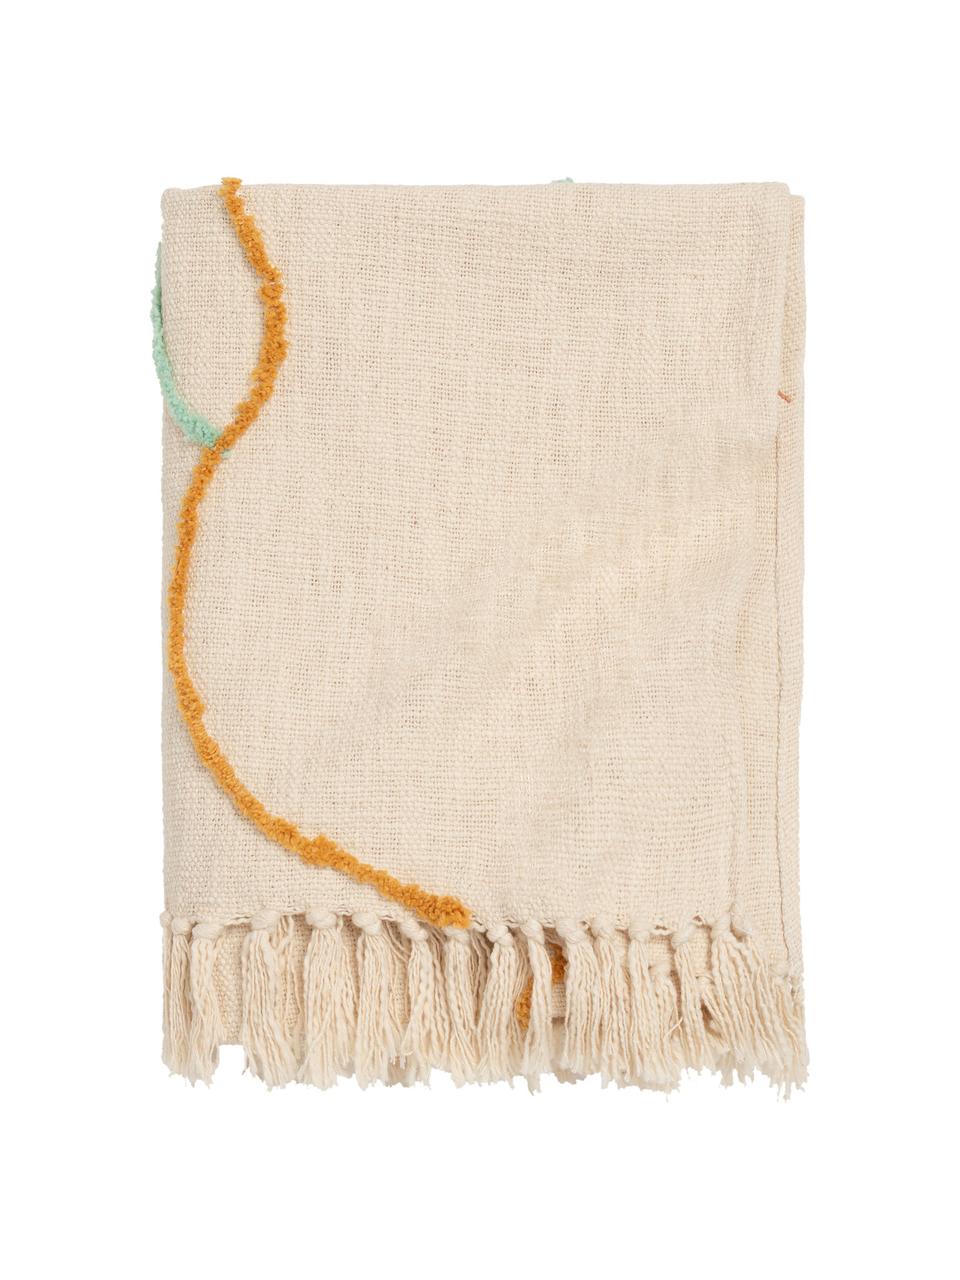 Manta de algodón con flecos Malva, 100% algodón, Crema, multicolor, An 120 x L 180 cm